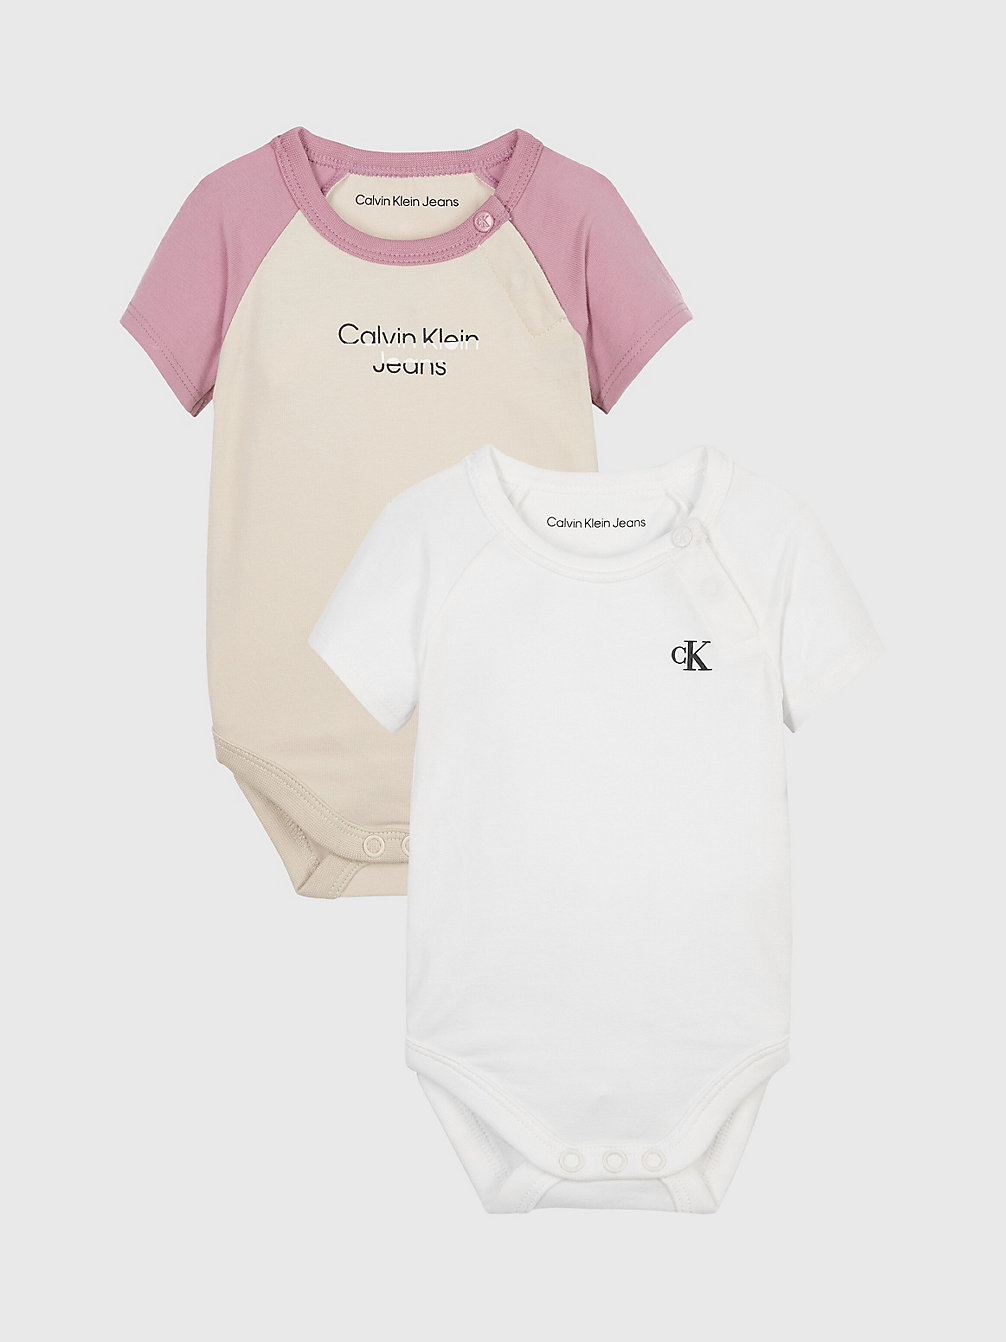 BRIGHT WHITE / CLASSIC BEIGE 2er-Pack Baby-Body undefined newborn Calvin Klein